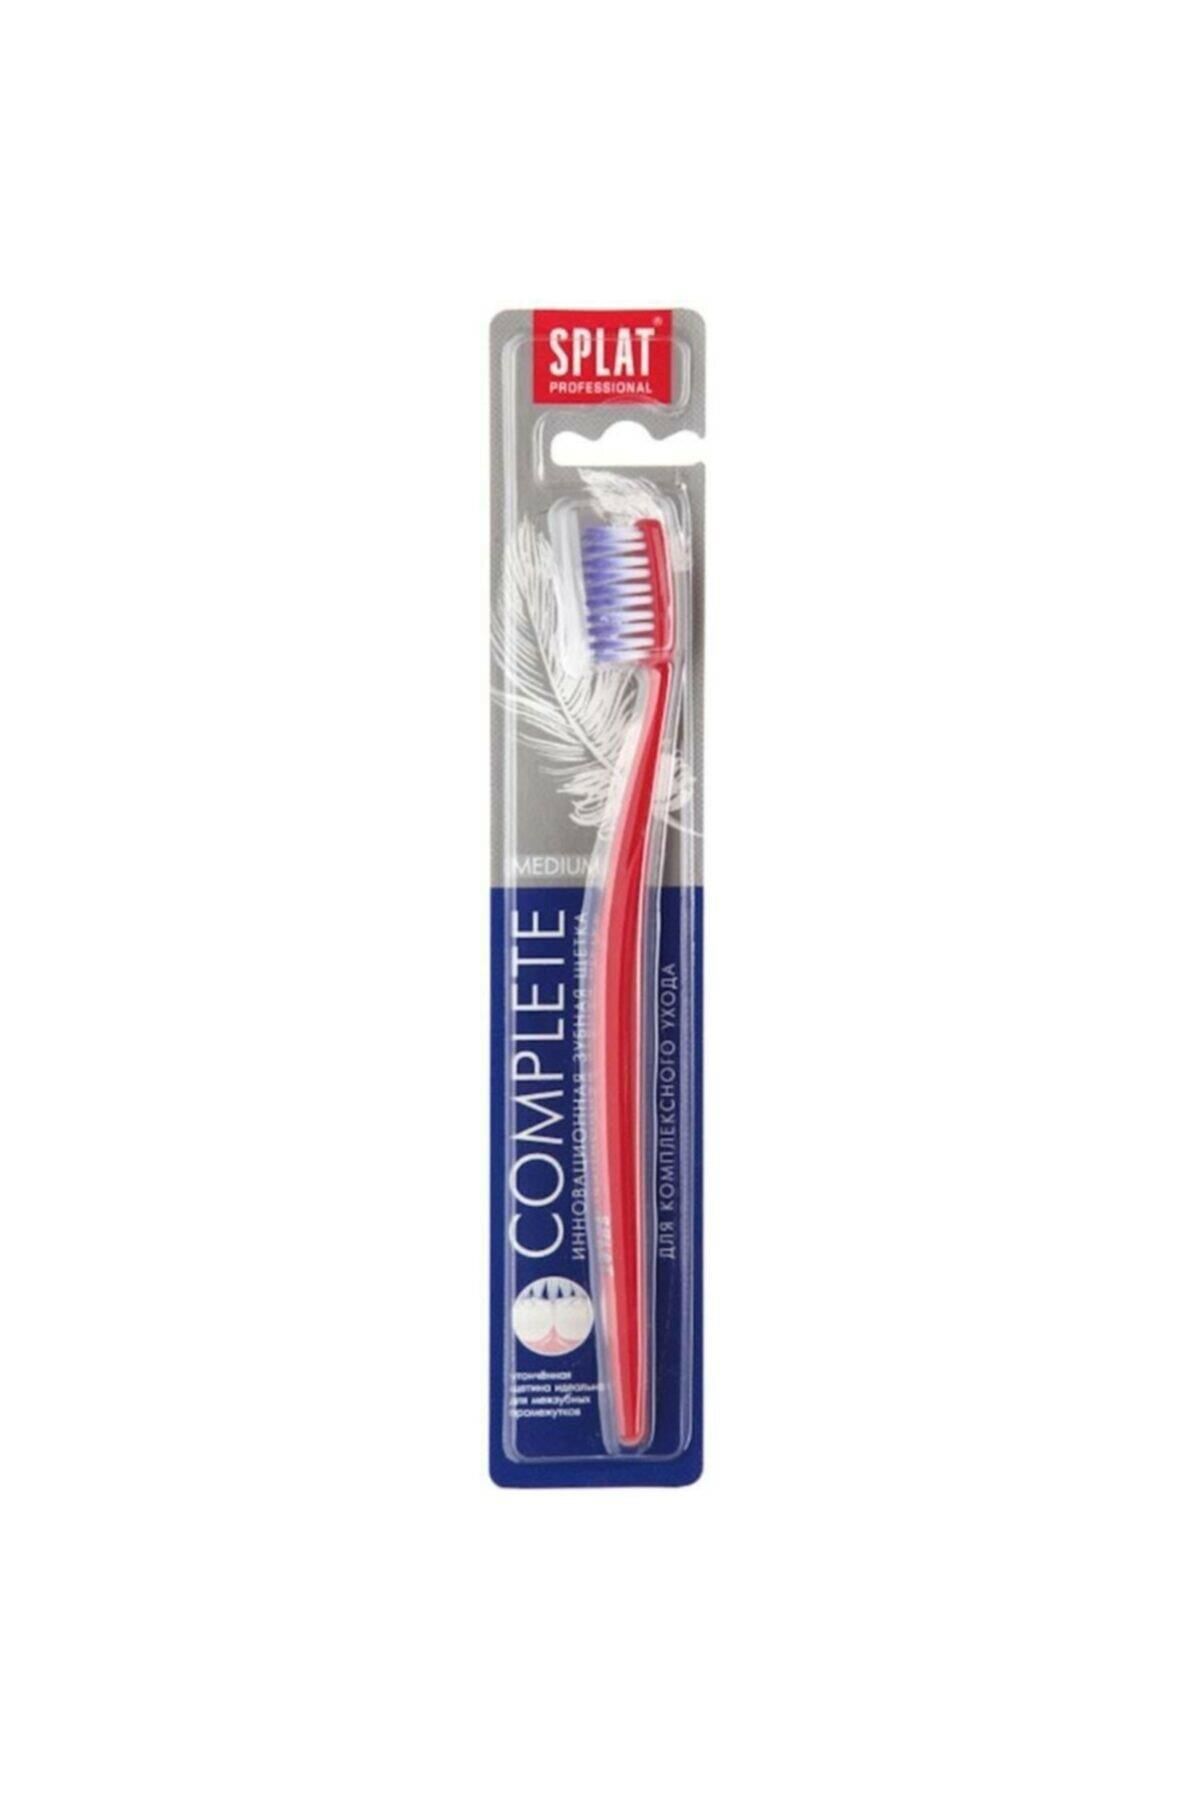 Splat Complete Diş Fırçası Medium